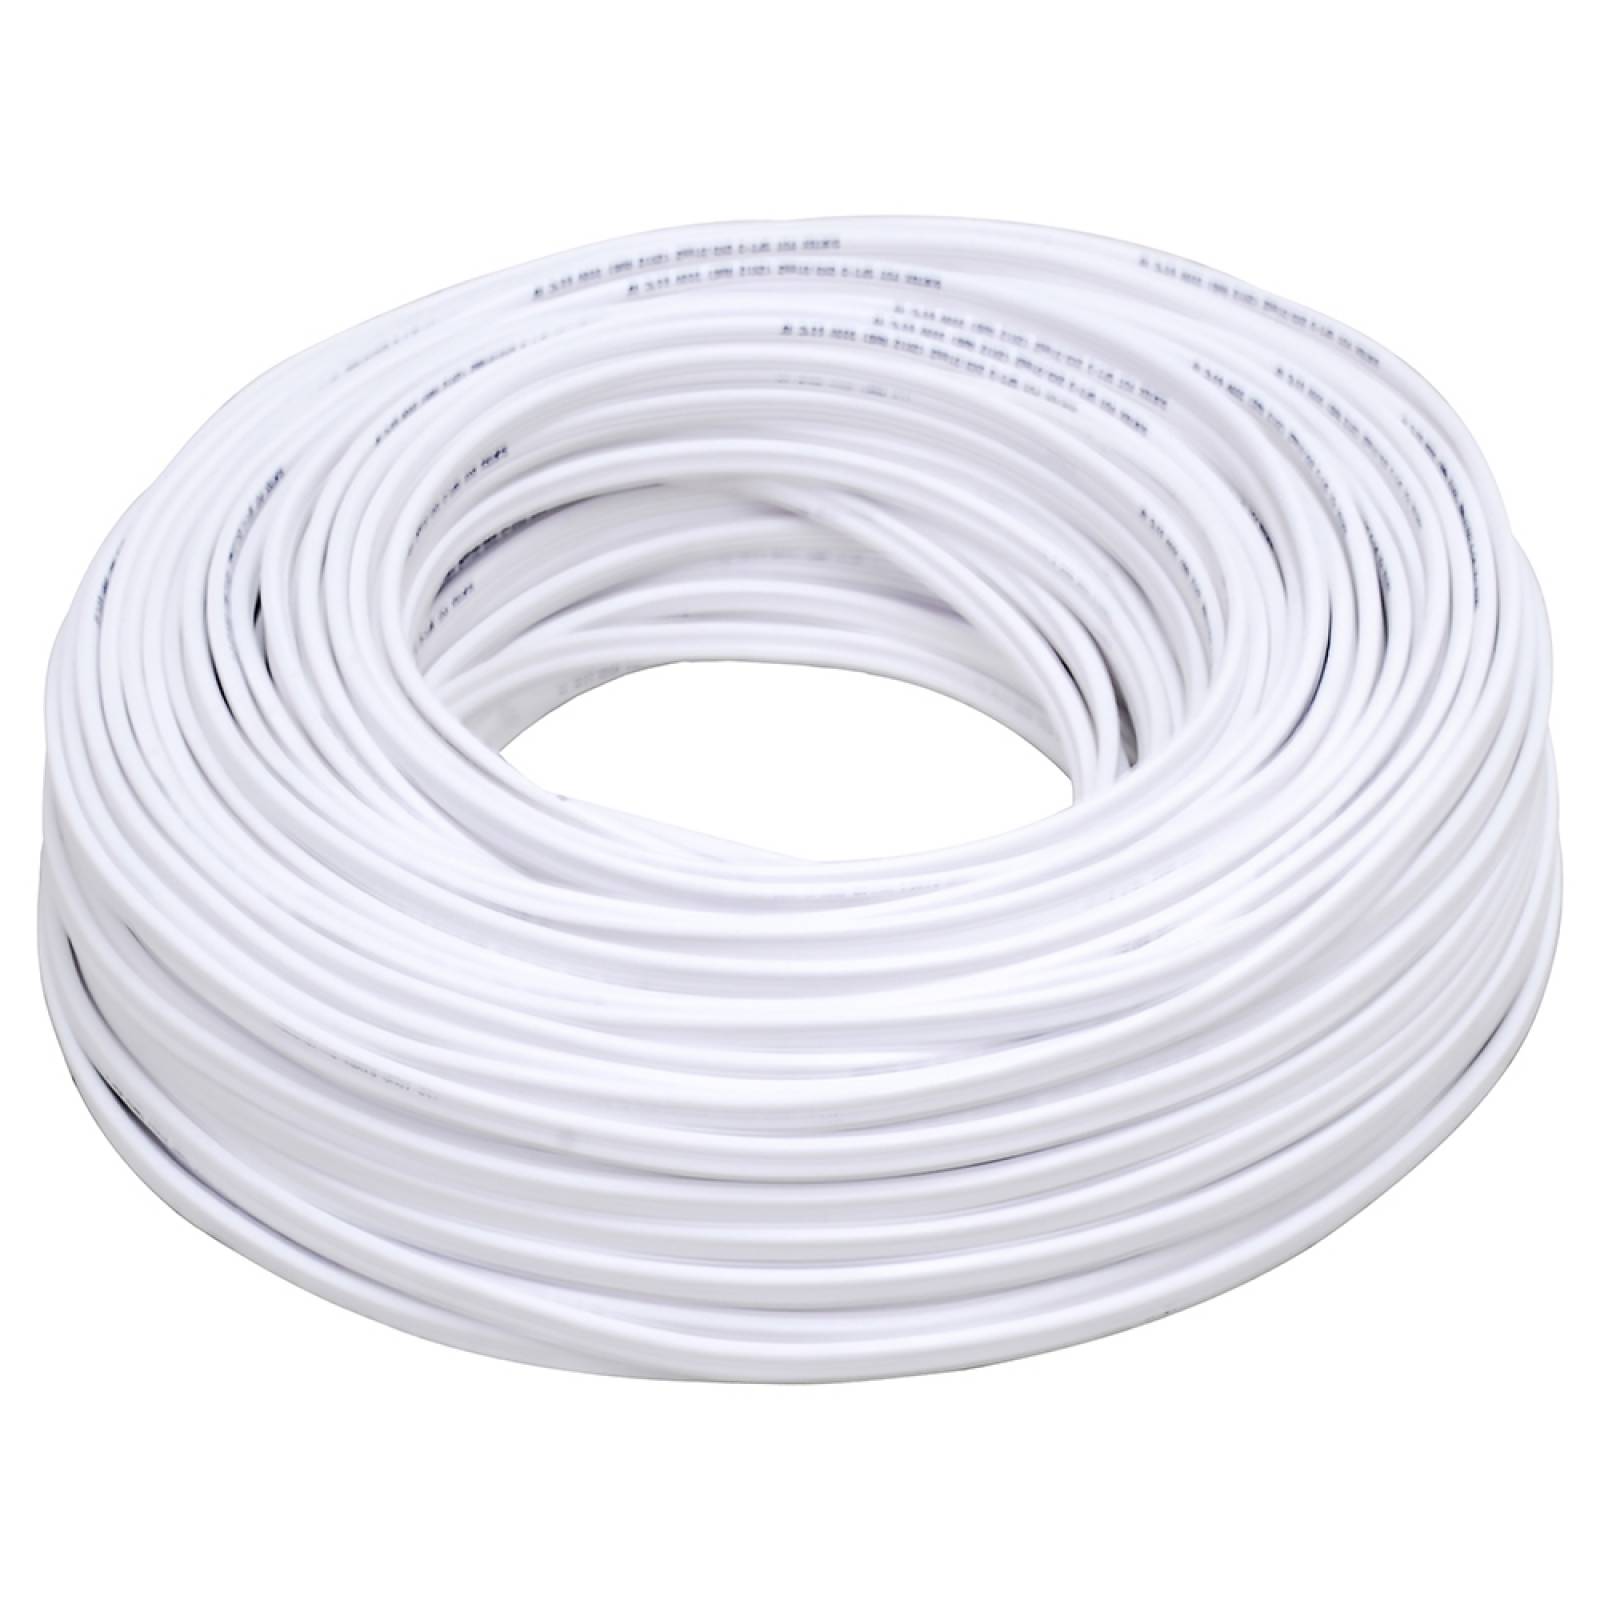 Cable Eléctrico Tipo Pot Cal. 2 X 16 100mt Blanco 136928 Sur 